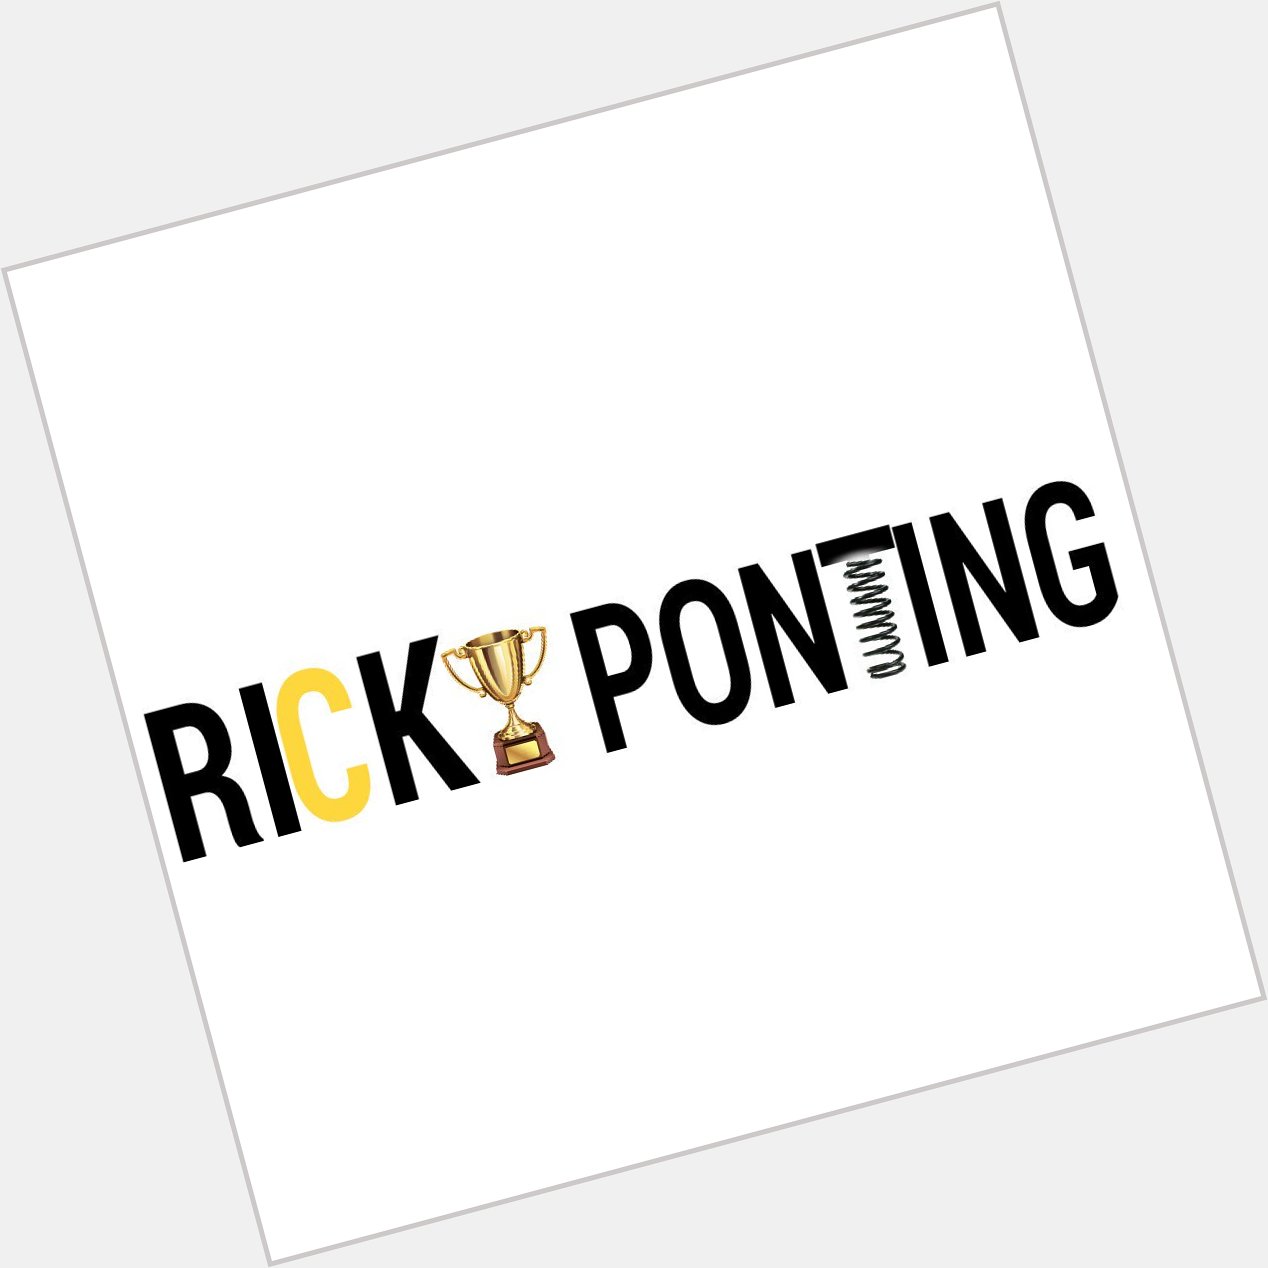 Happy birthday Ricky Ponting!!  